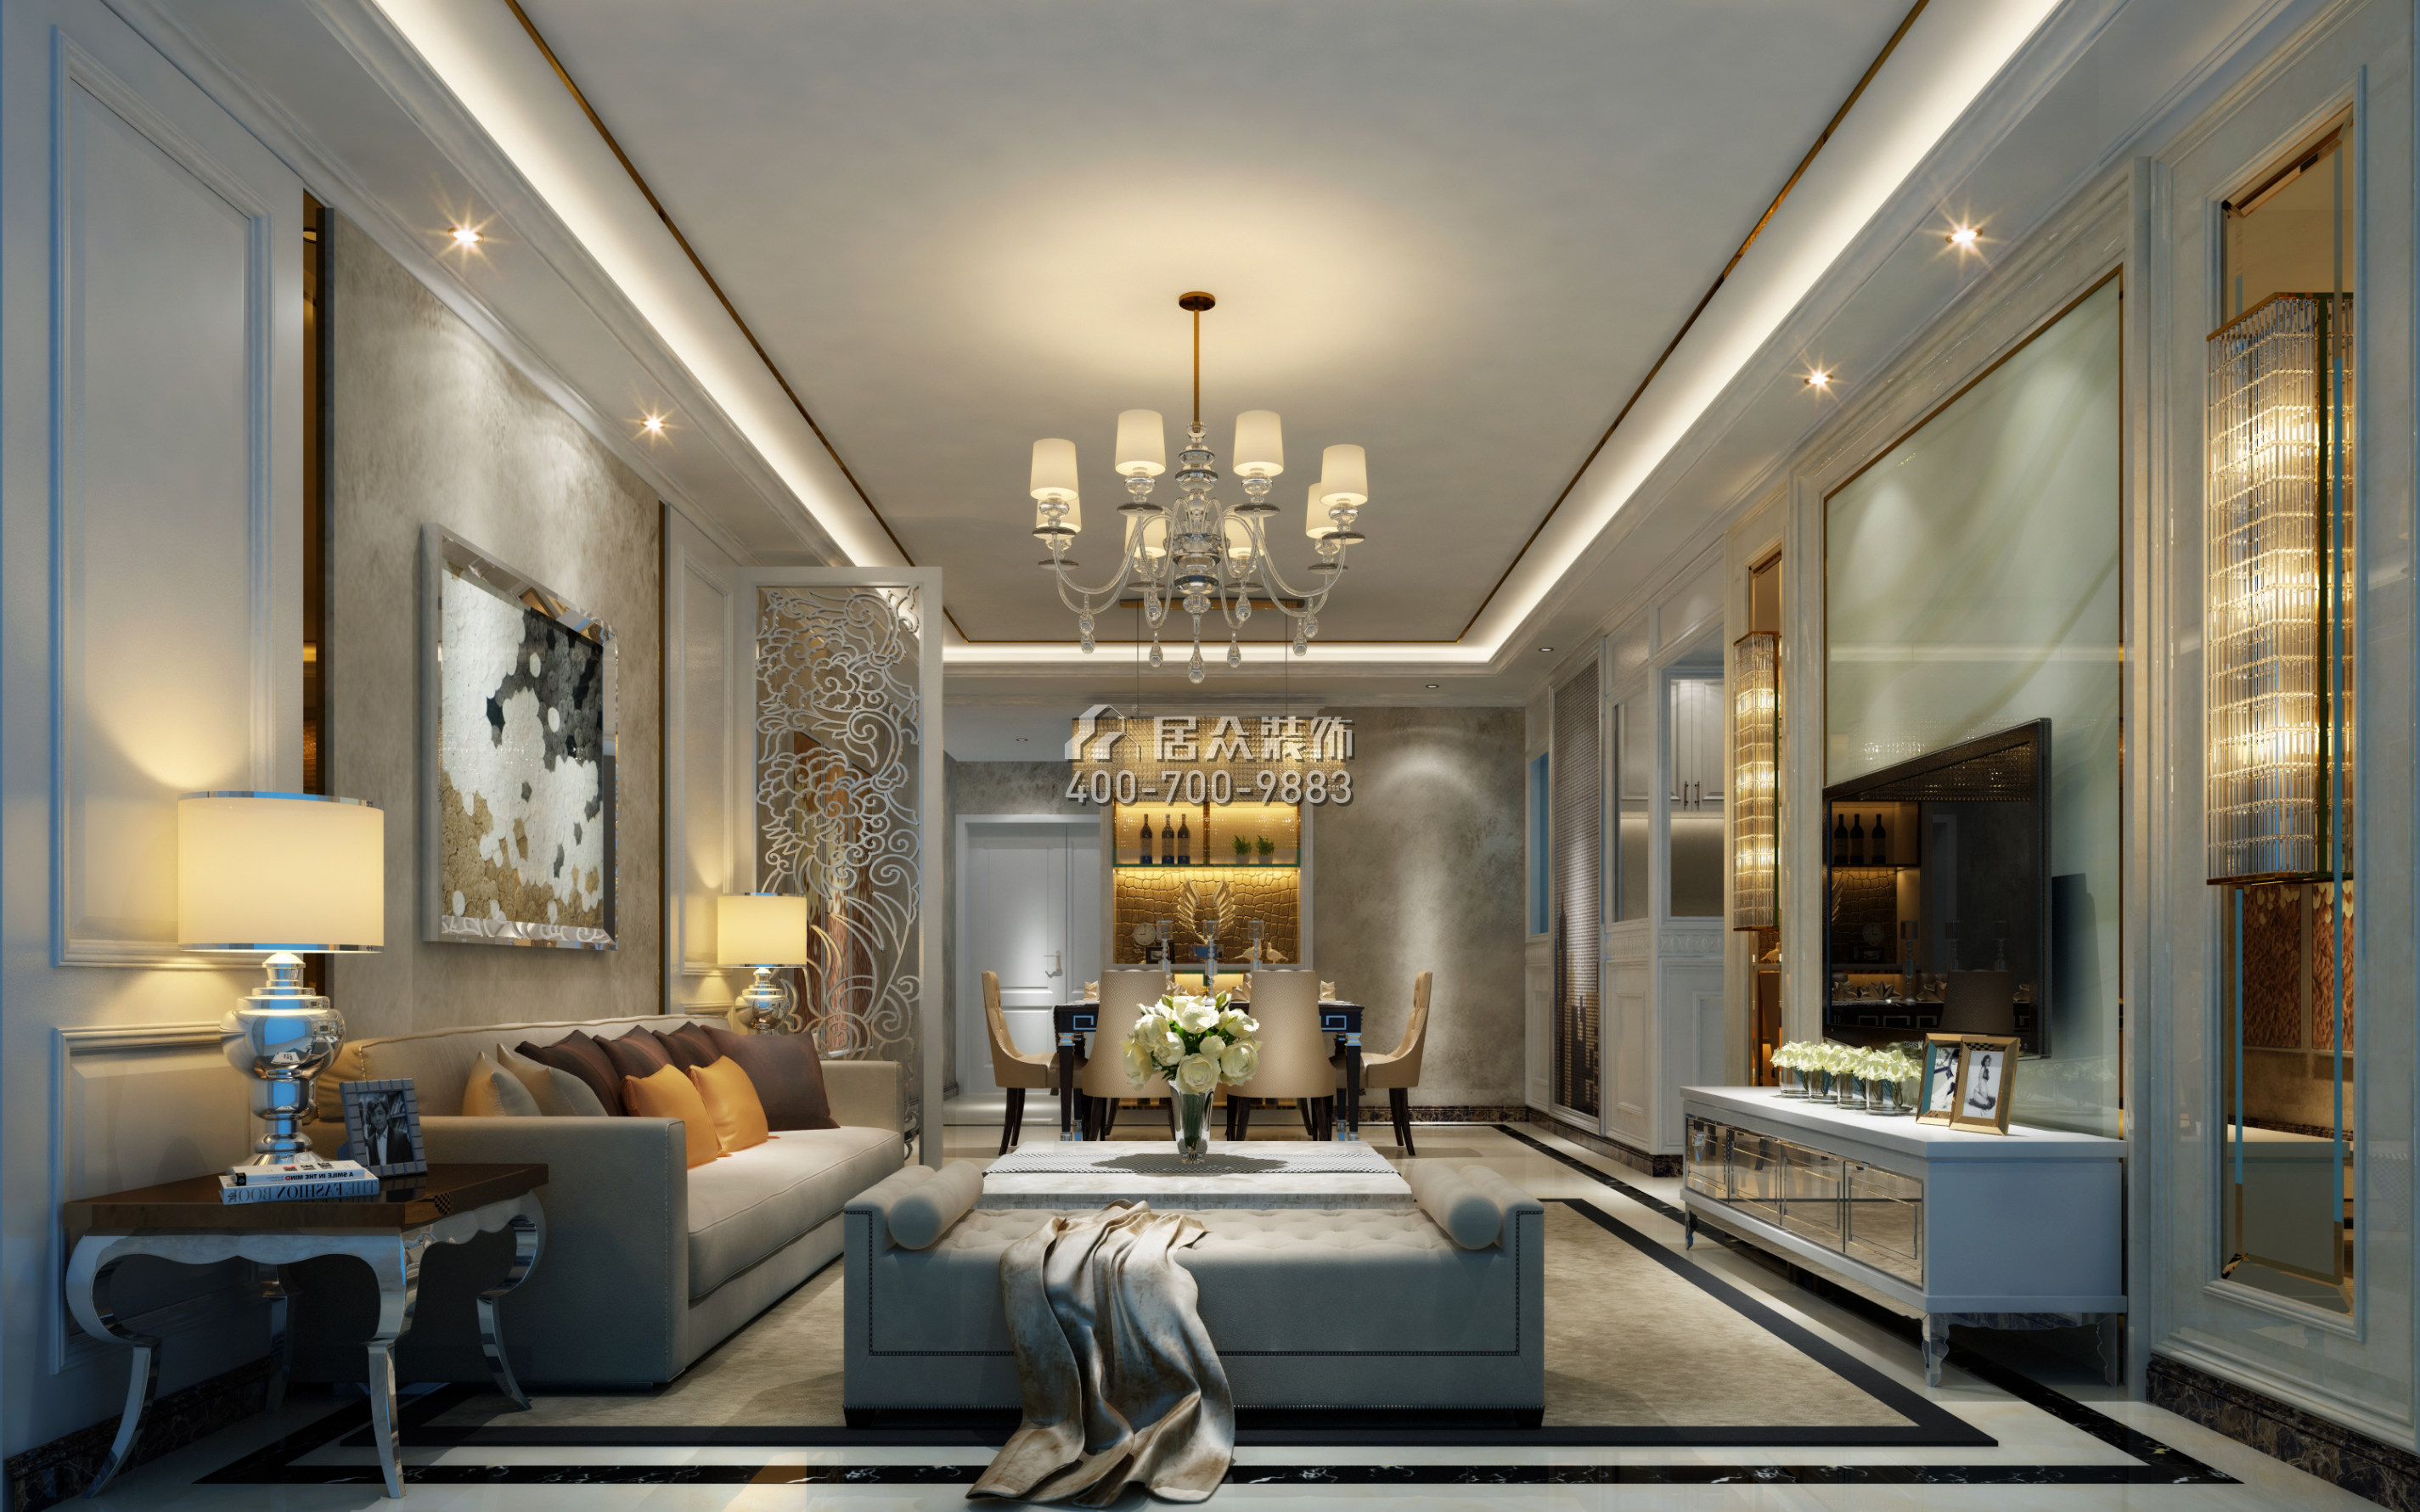 合正荣悦府142平方米欧式风格平层户型客厅装修效果图